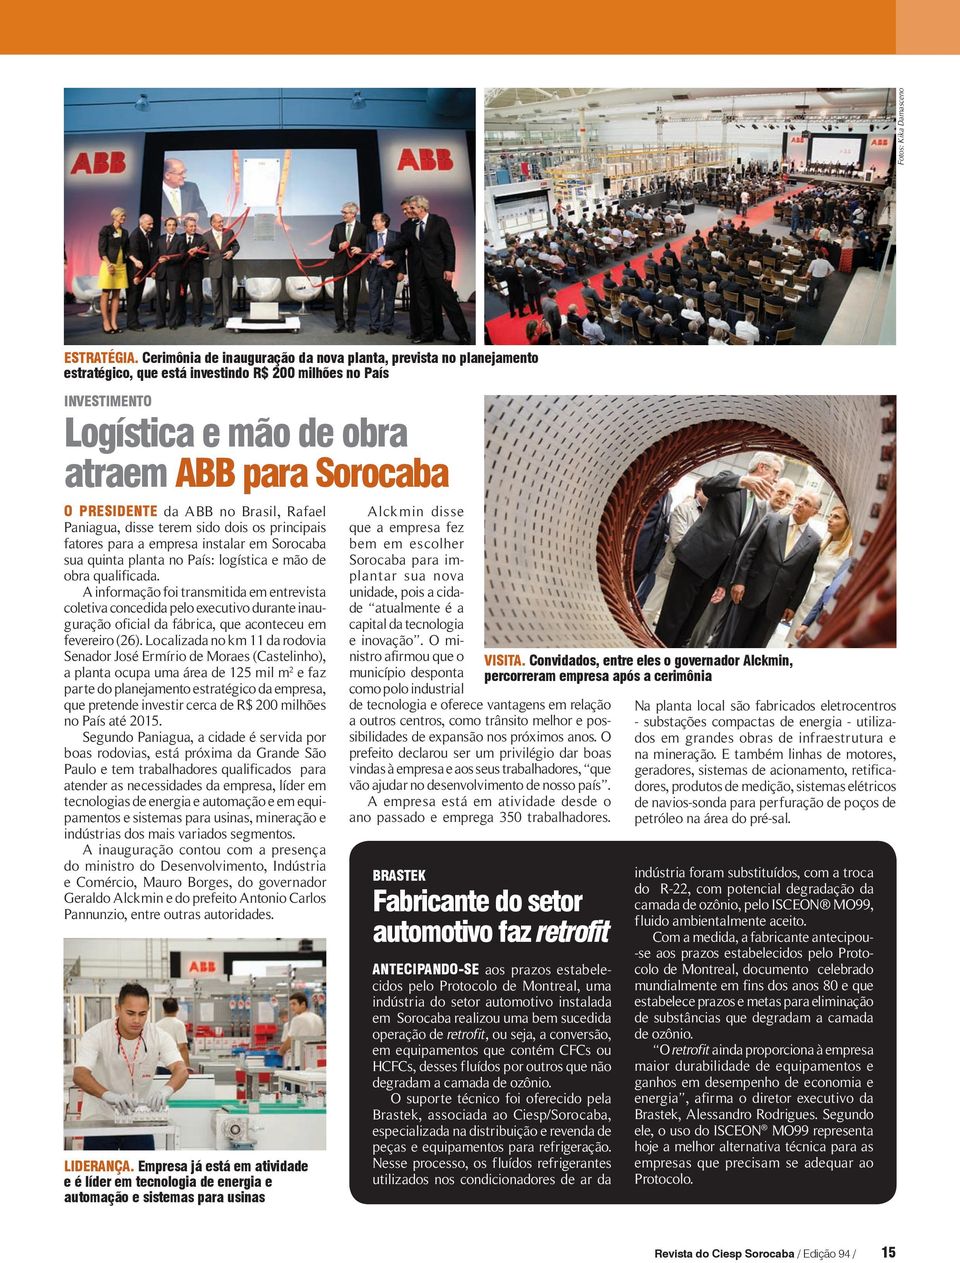 ABB no Brasil, Rafael Paniagua, disse terem sido dois os principais fatores para a empresa instalar em Sorocaba sua quinta planta no País: logística e mão de obra qualificada.